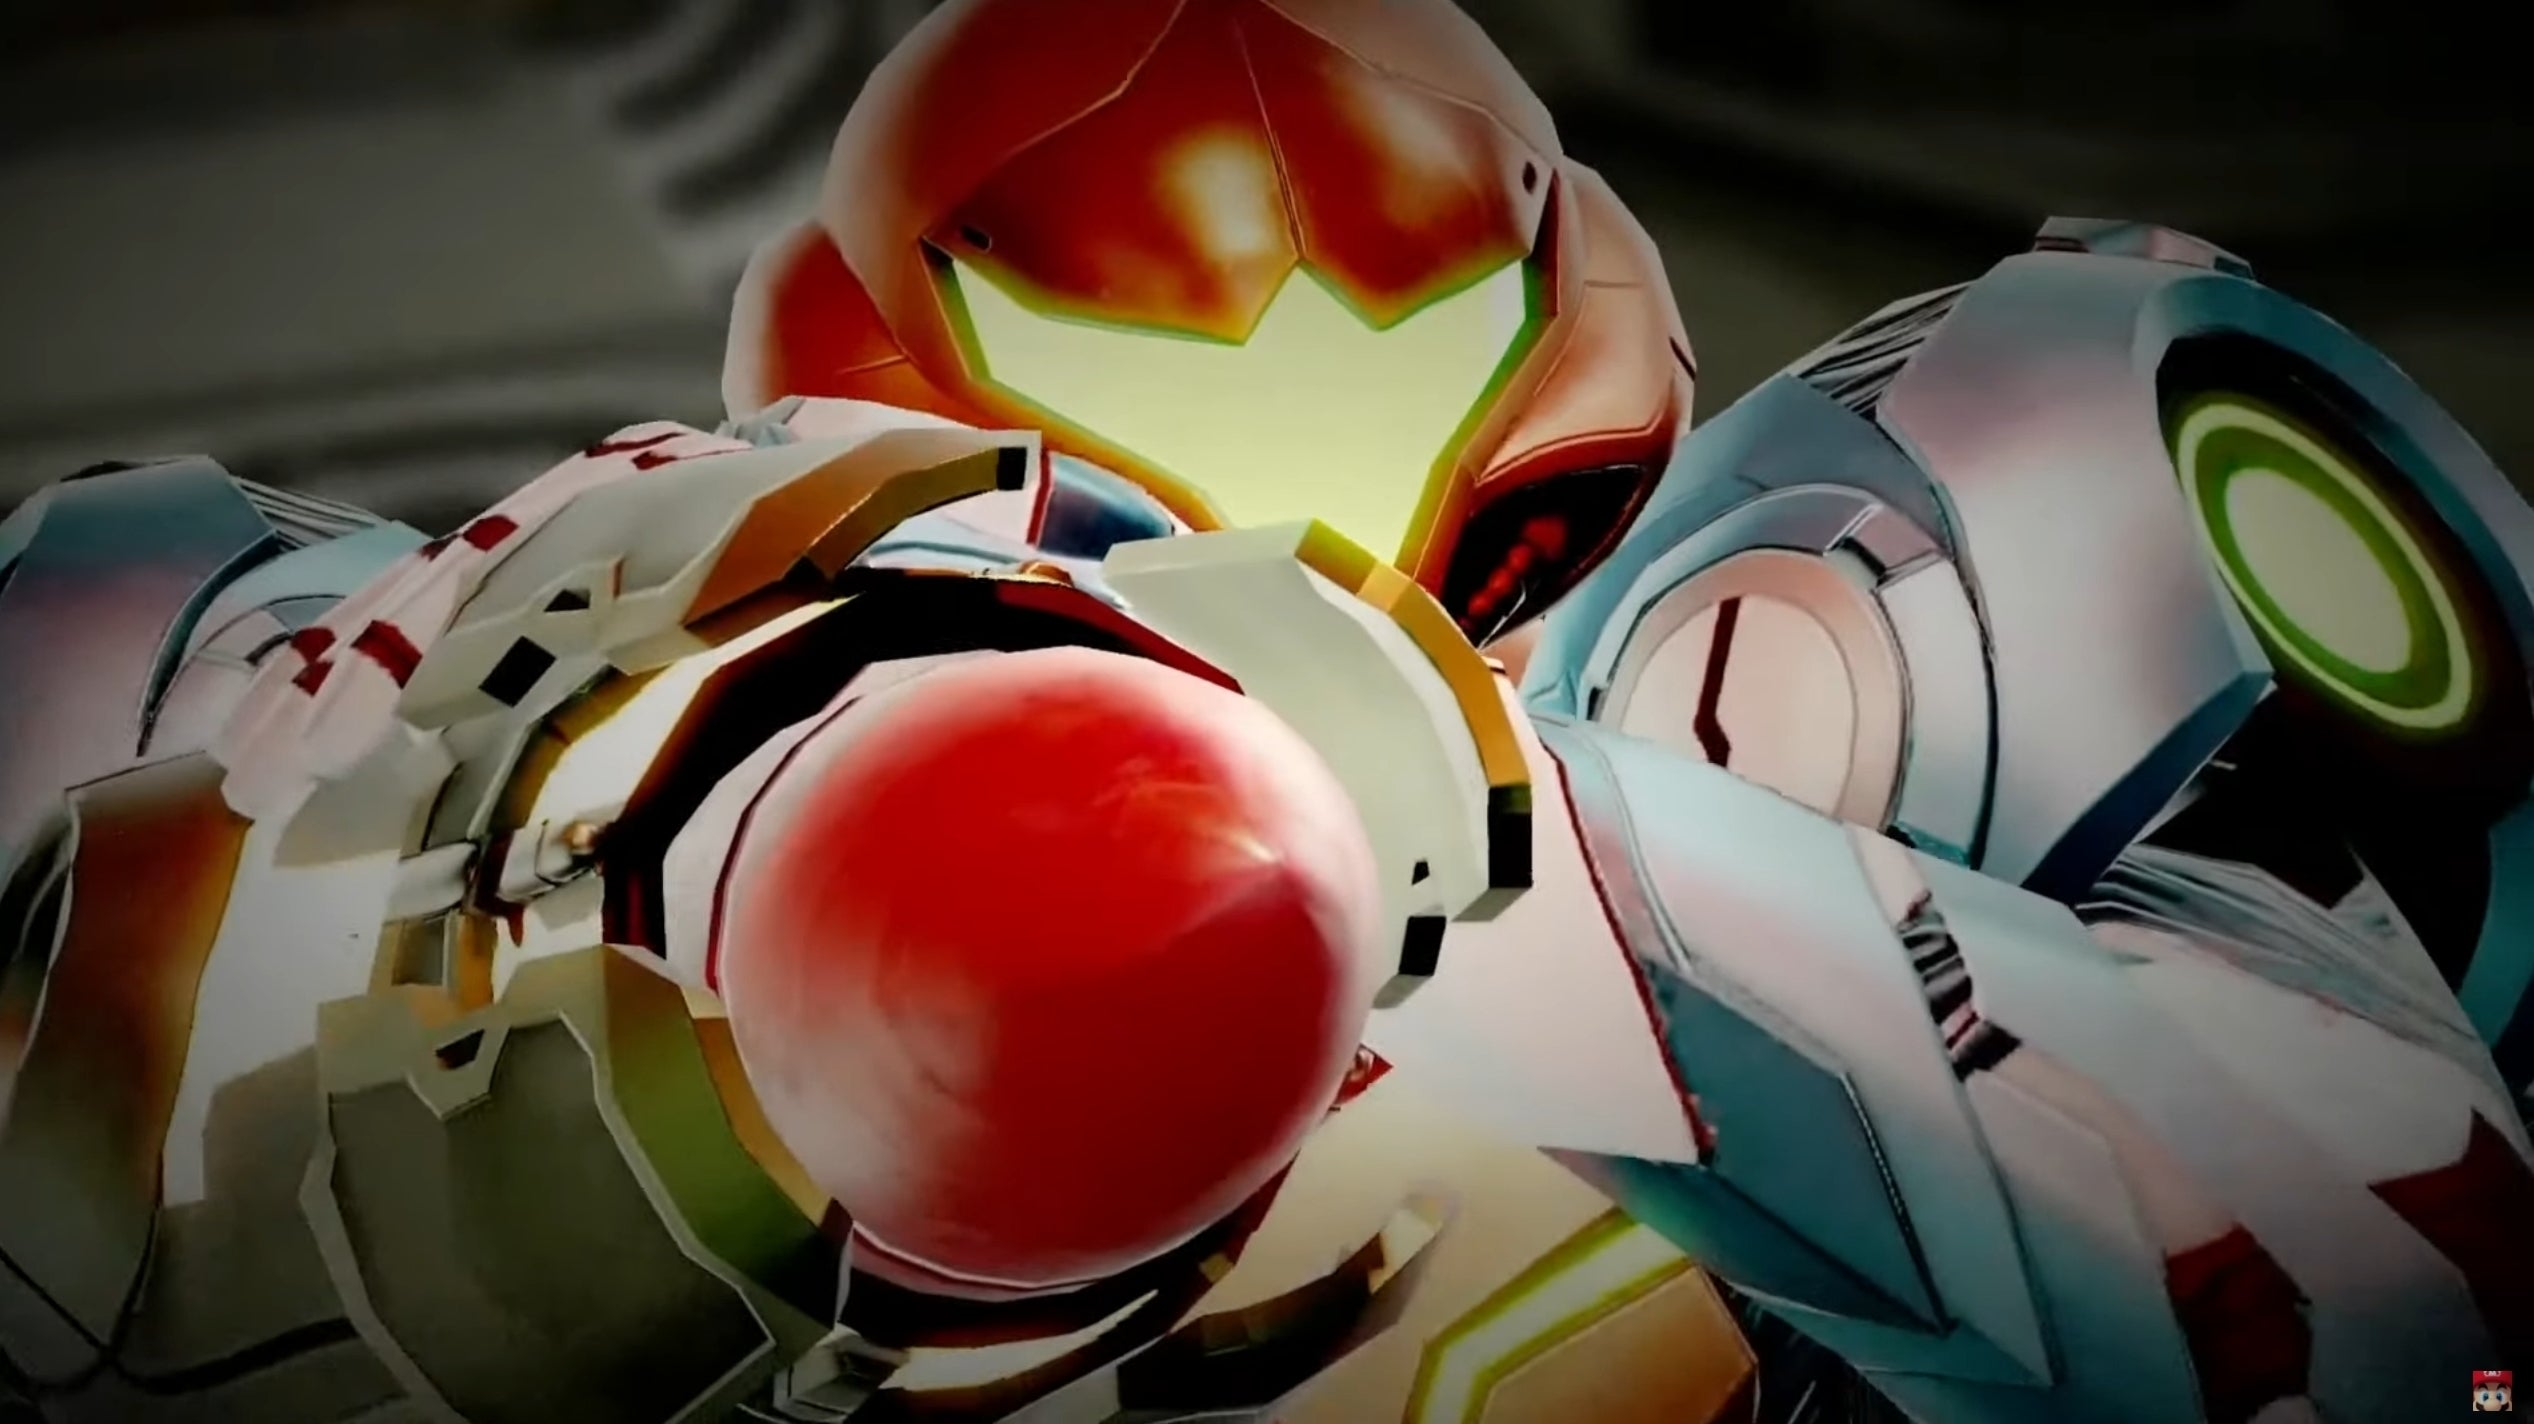 Immagine di Metroid Prime 4 è in sviluppo e tutto procede per il meglio